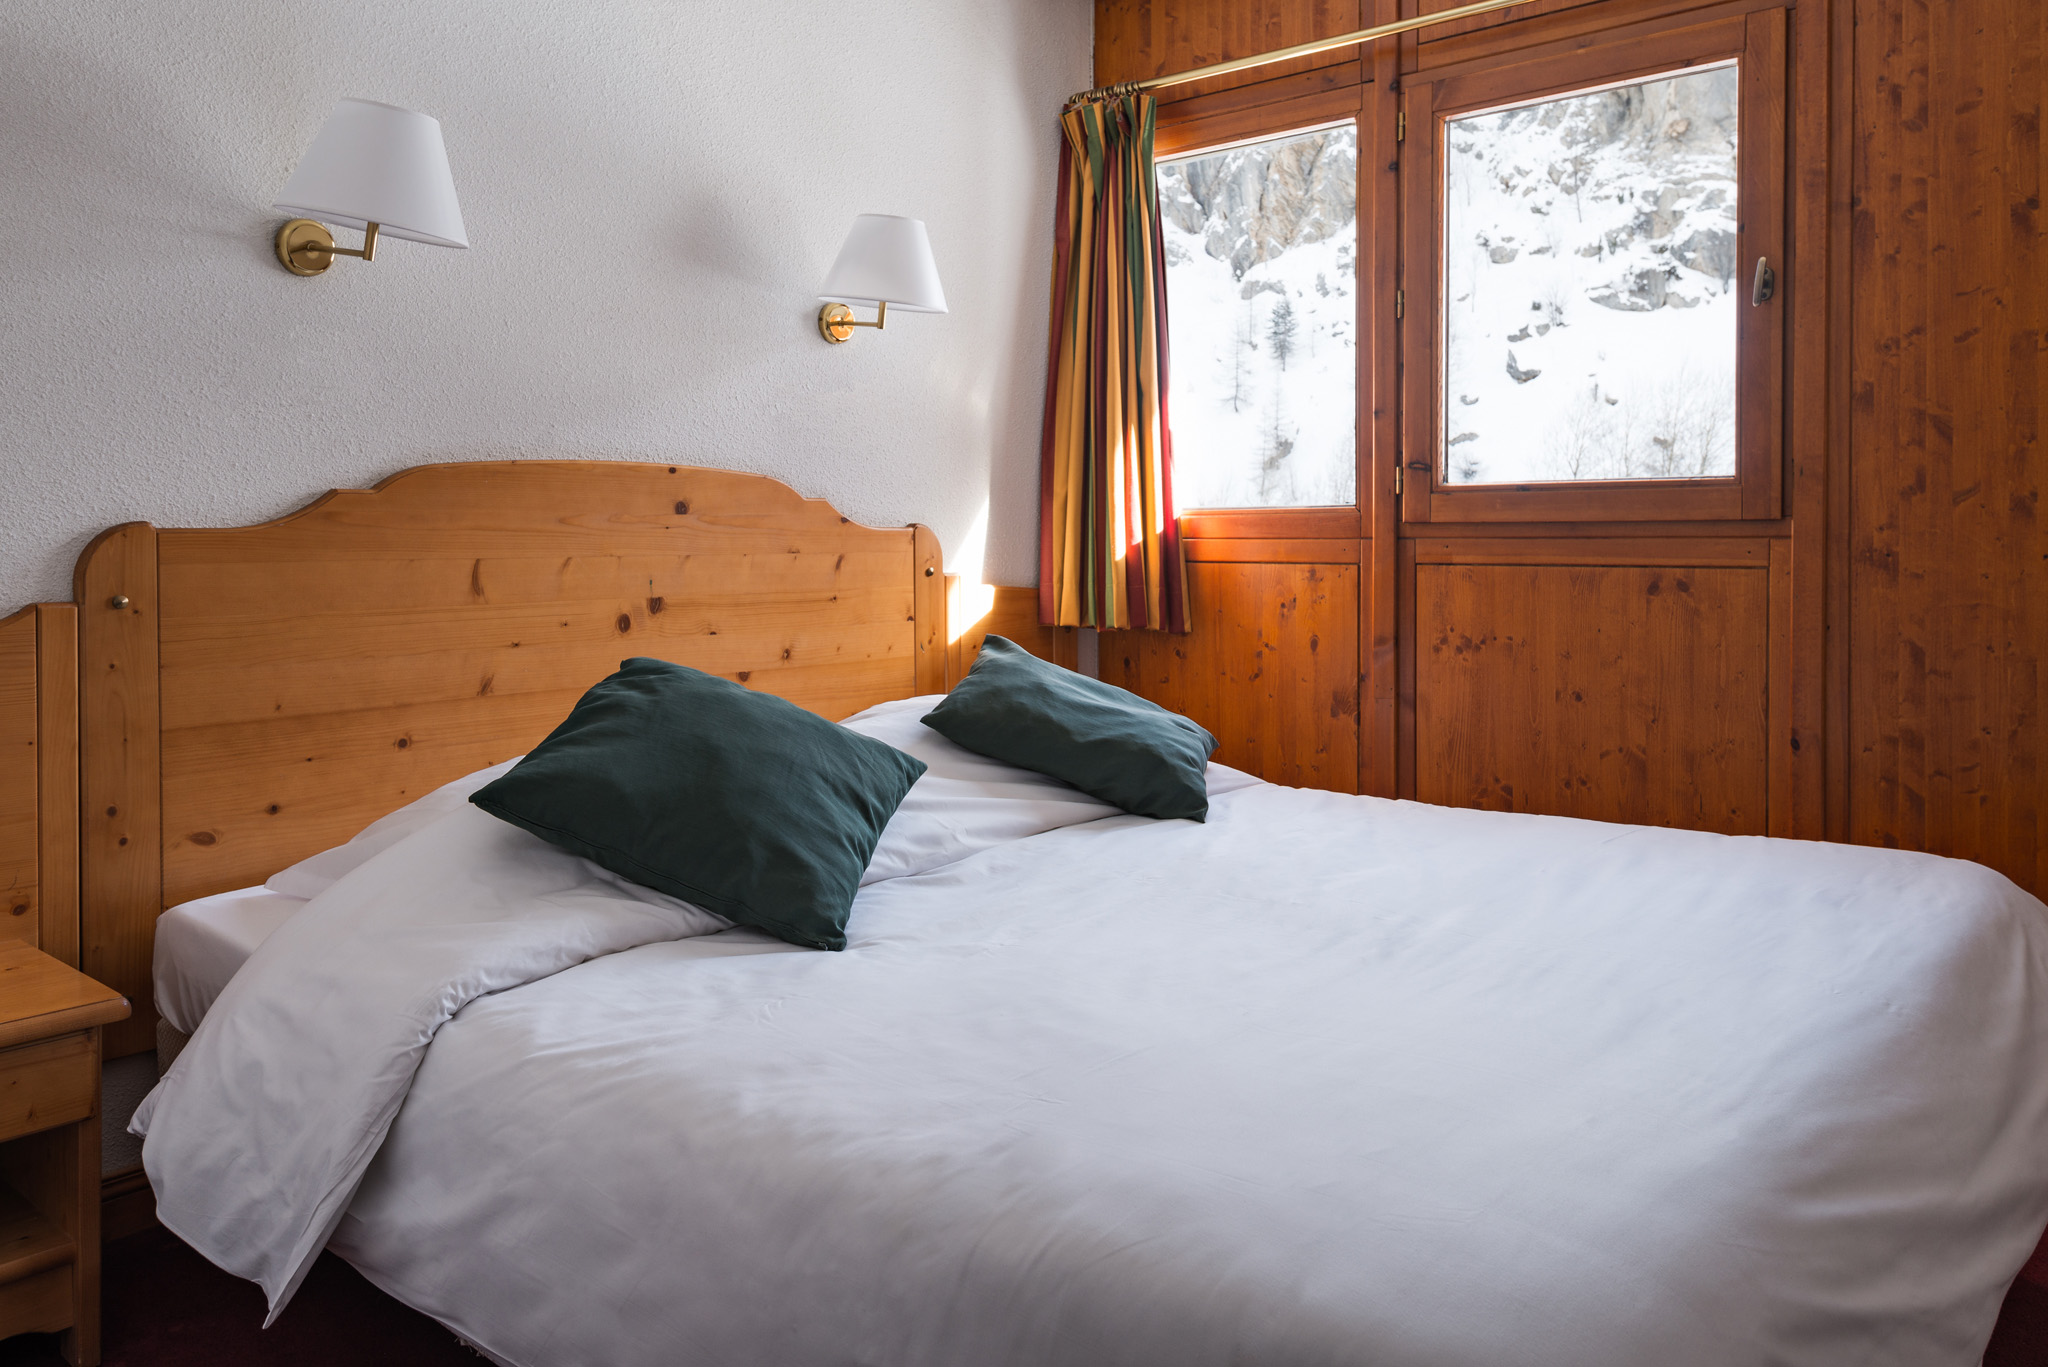 Les Chalets de Galibier in Valloire: Schlafzimmer (Beispiel)